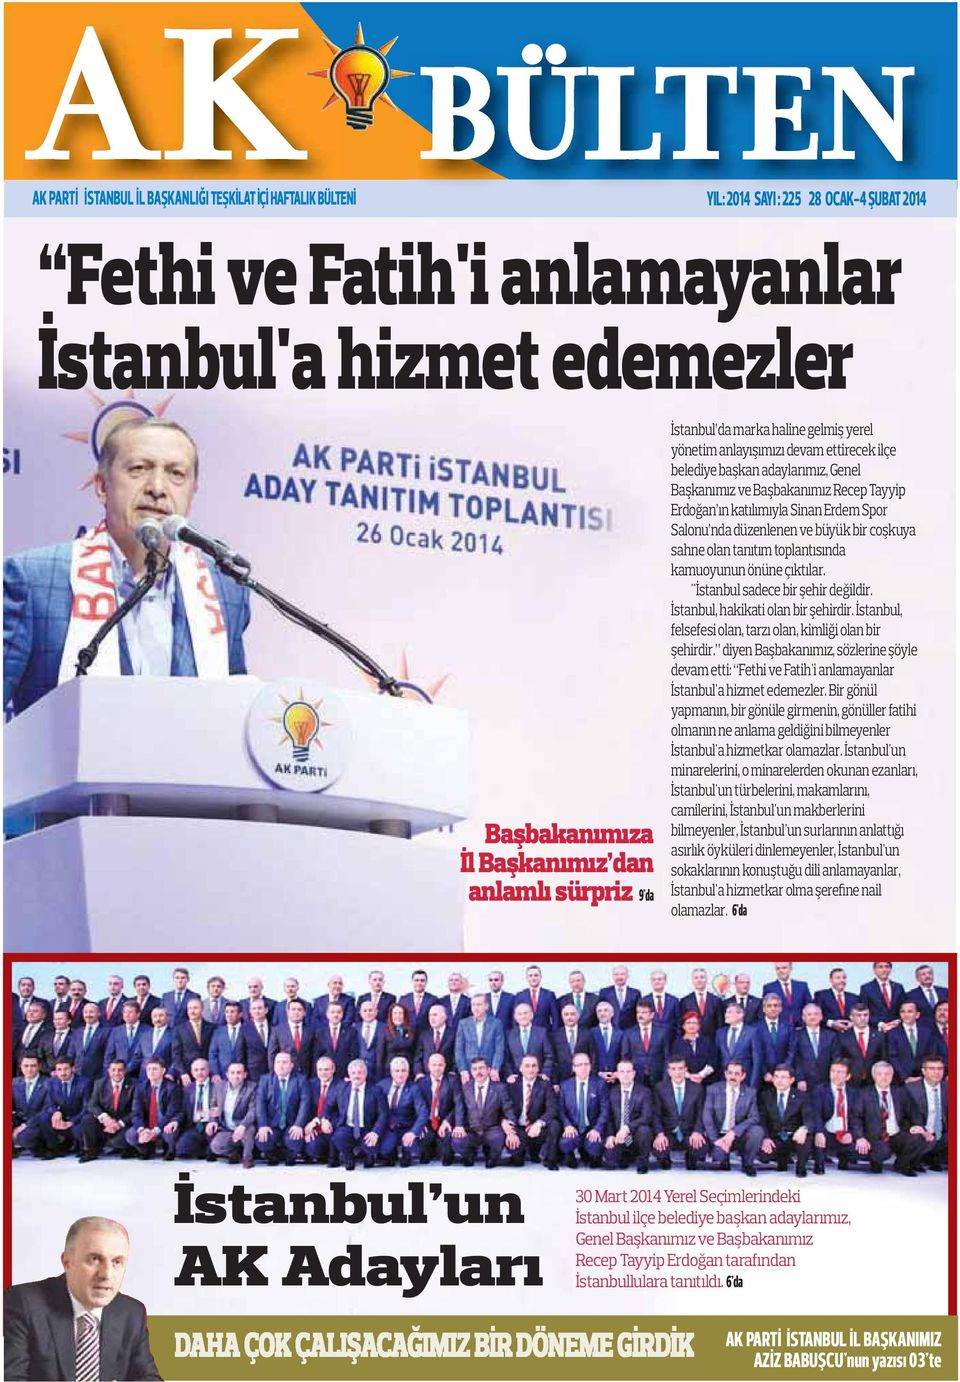 Sinan Erdem Spor Salonu nda düzenlenen ve büyük bir coşkuya sahne olan tanıtım toplantısında kamuoyunun önüne çıktılar. "İstanbul sadece bir şehir değildir. İstanbul, hakikati olan bir şehirdir.